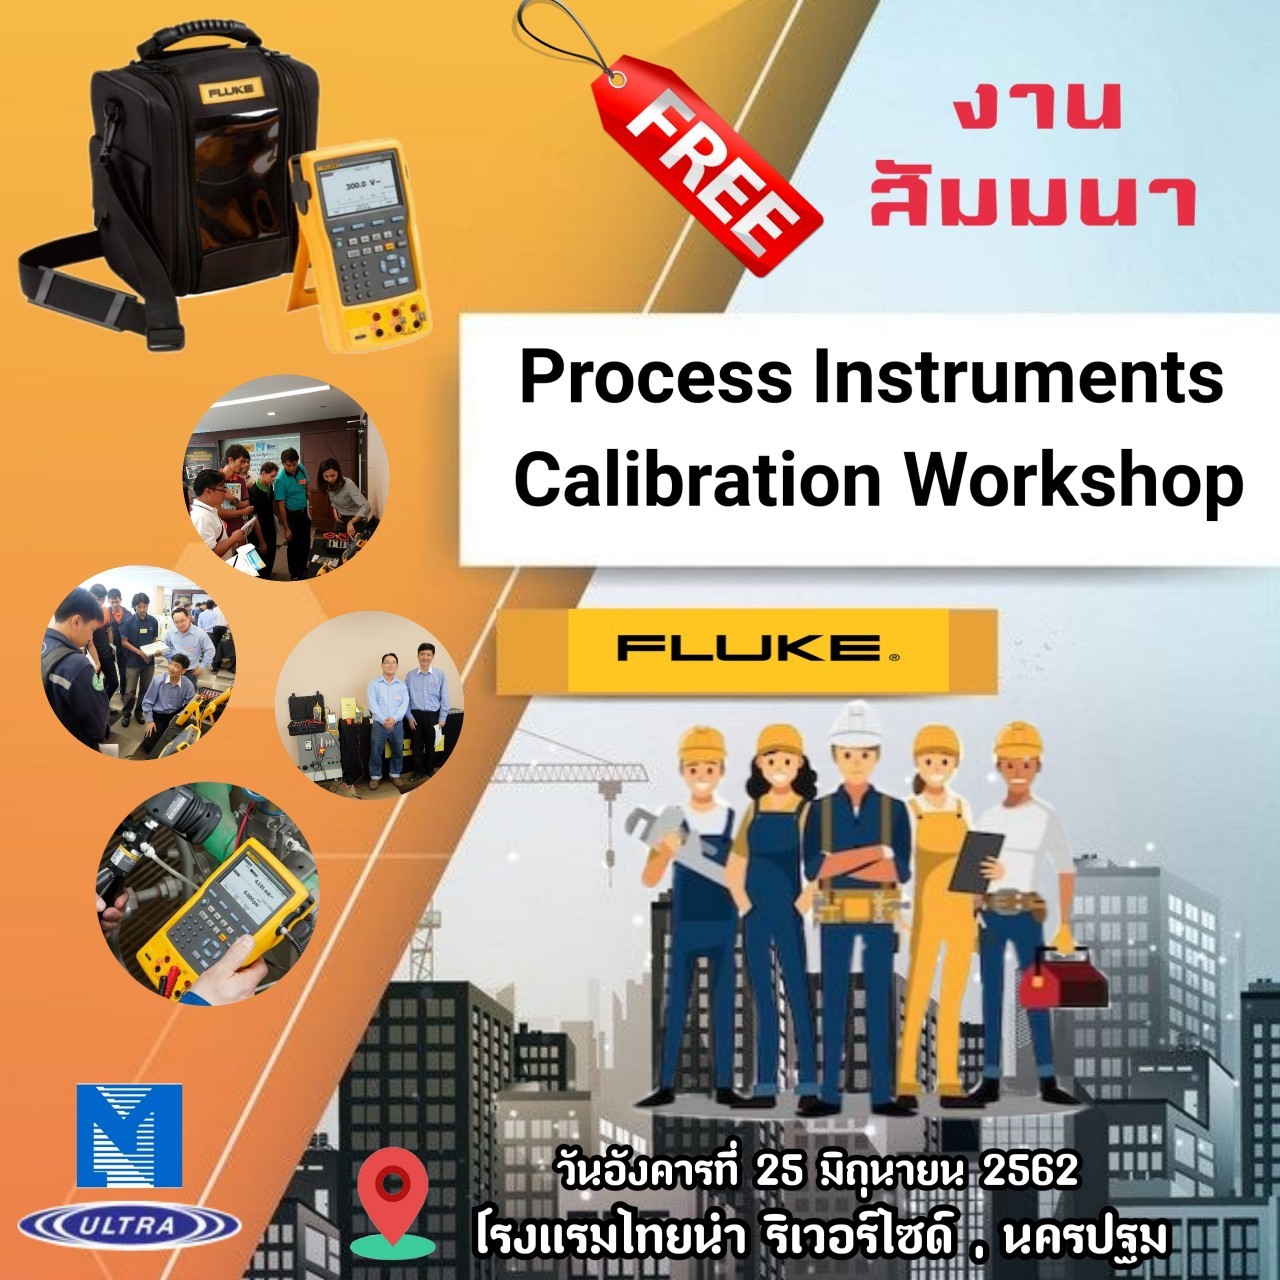 ประมวลภาพสัมมนาเชิงปฏิบัติการเรื่อง “Process Instruments Calibration Workshop” 